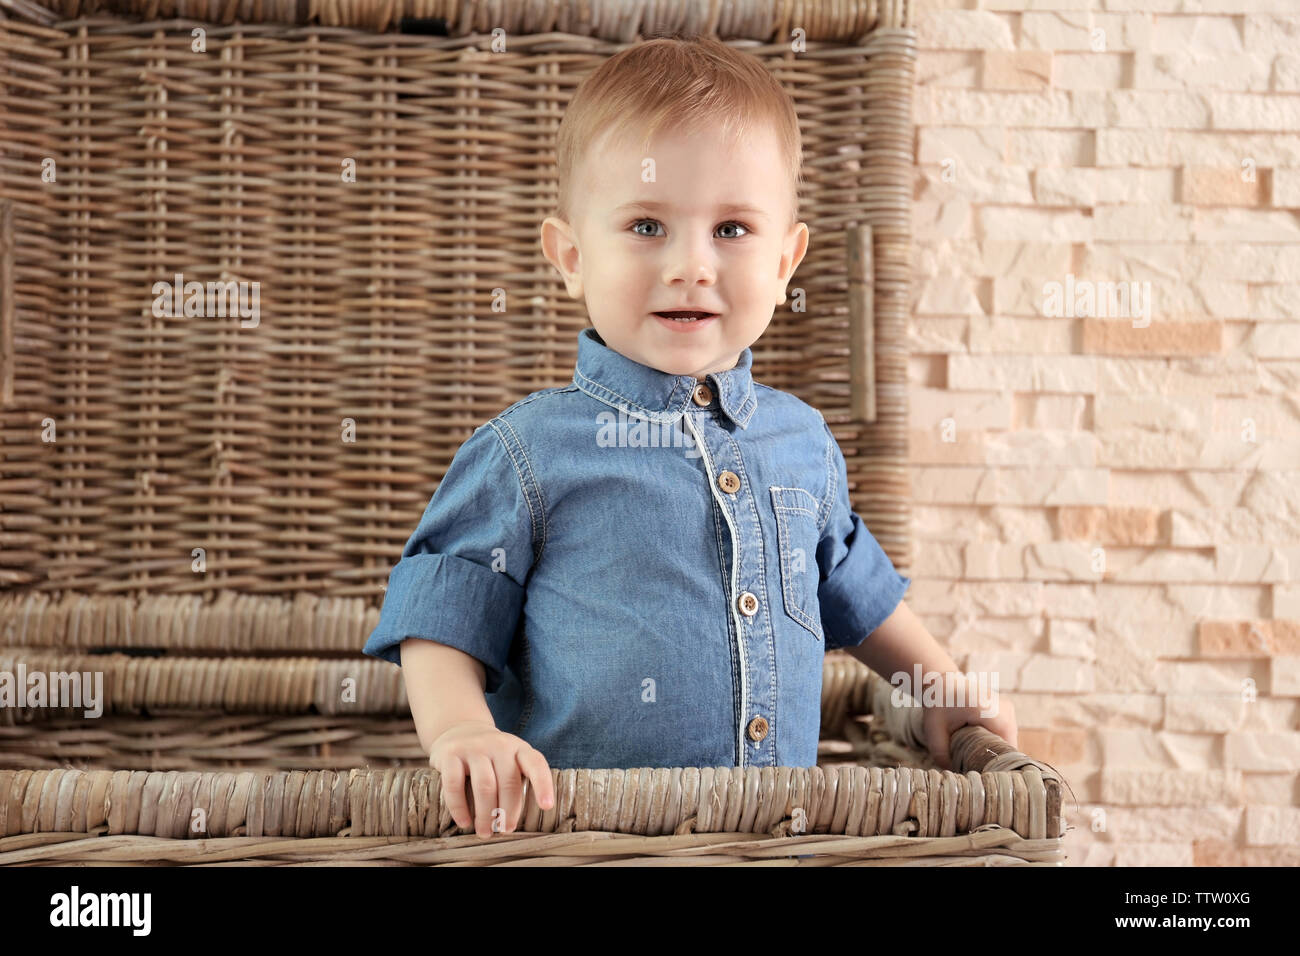 Stilvolle baby boy in Jeanshemd in einem Weidenkorb auf einem Stein Wand  Hintergrund. Fashion Concept Stockfotografie - Alamy